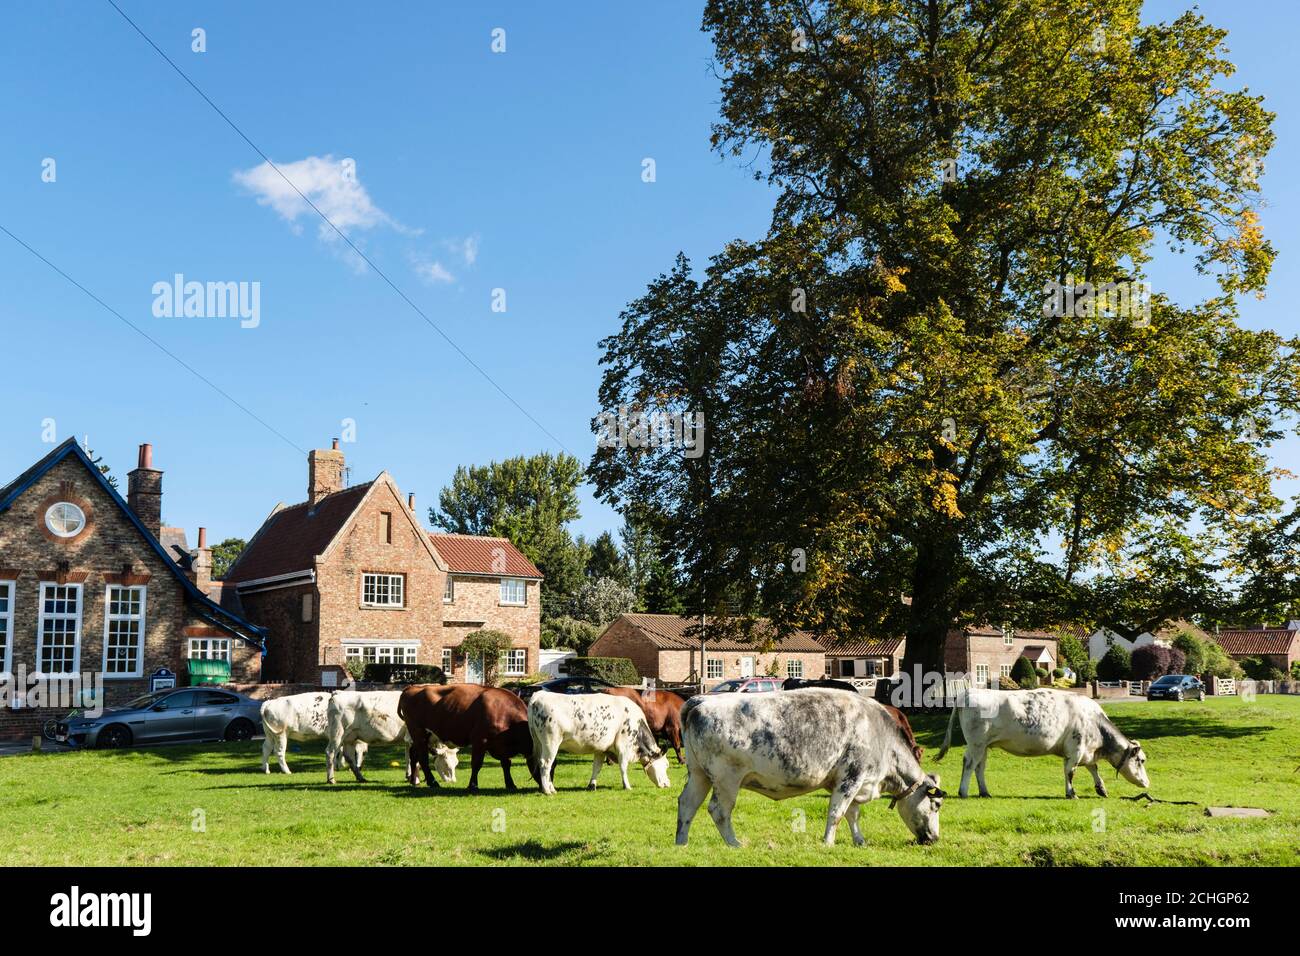 Vaches de bétail en liberté paissant sur des terres communes sur un village de campagne vert à l'extérieur d'une école. Nun Monkton, York, Yorkshire du Nord, Angleterre, Royaume-Uni, Grande-Bretagne Banque D'Images